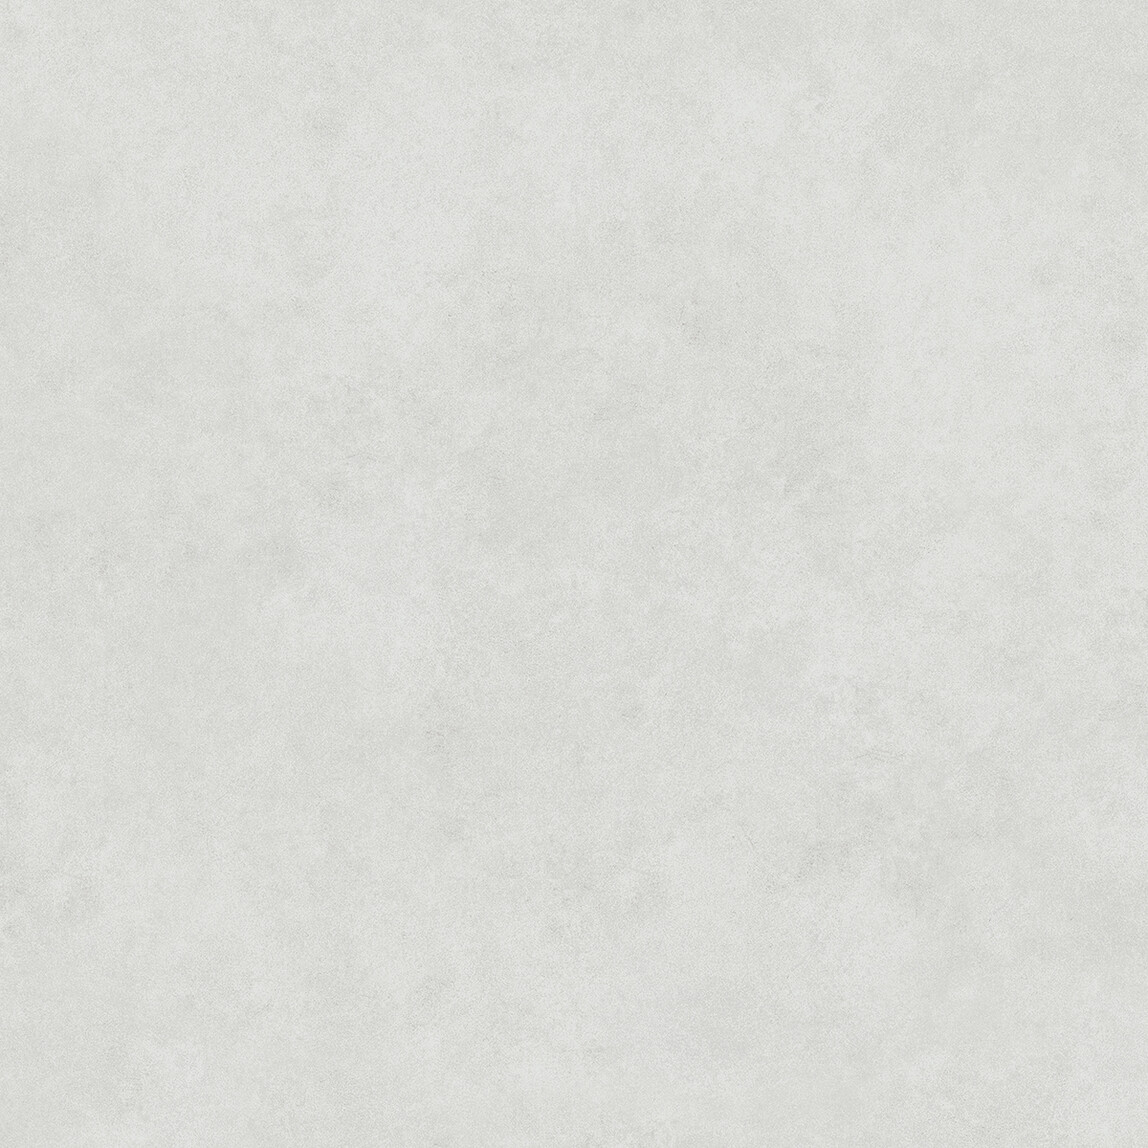    Kale Seramik Alesta Buz Beyazı 45x45cm 